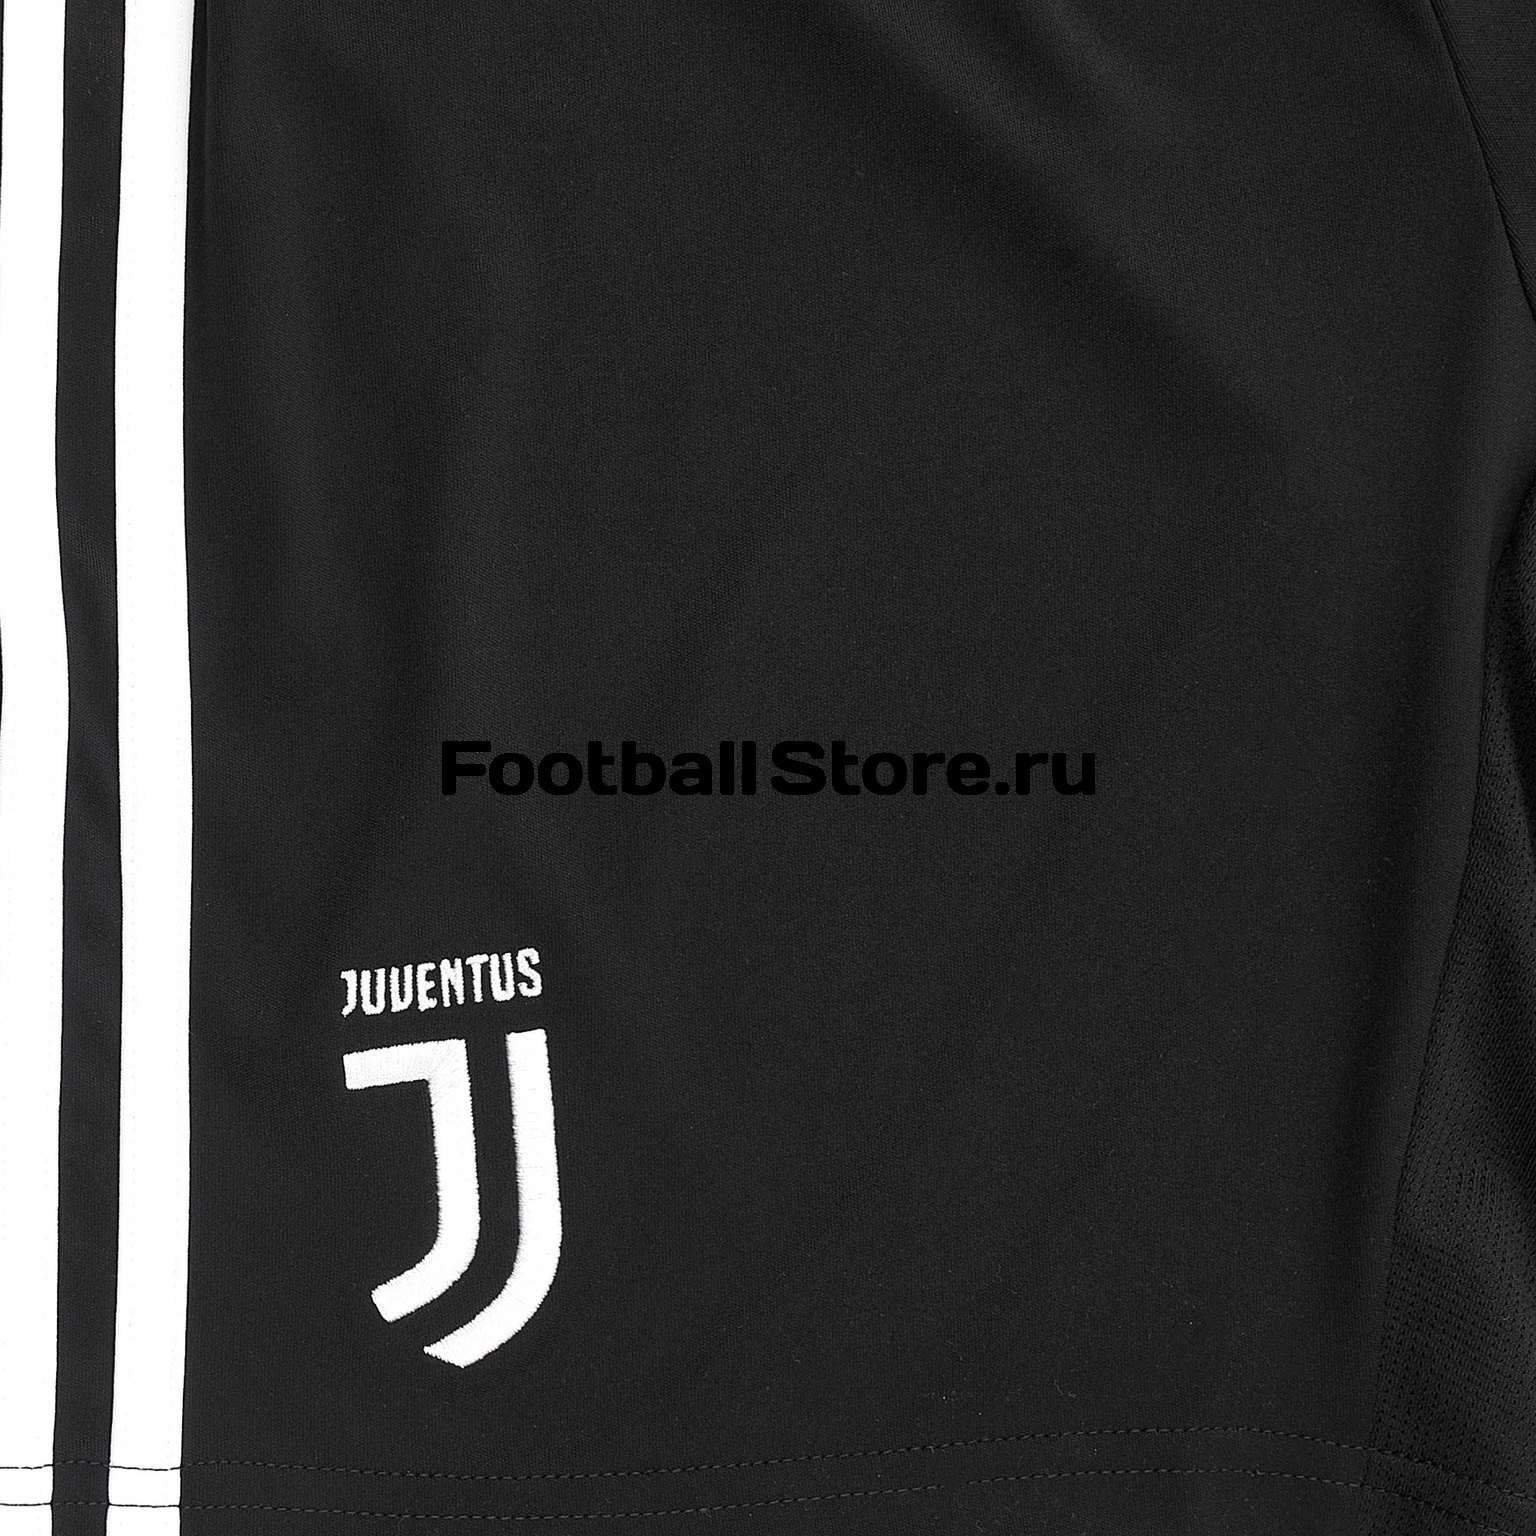 Шорты домашние подростковые Adidas Juventus 2019/20